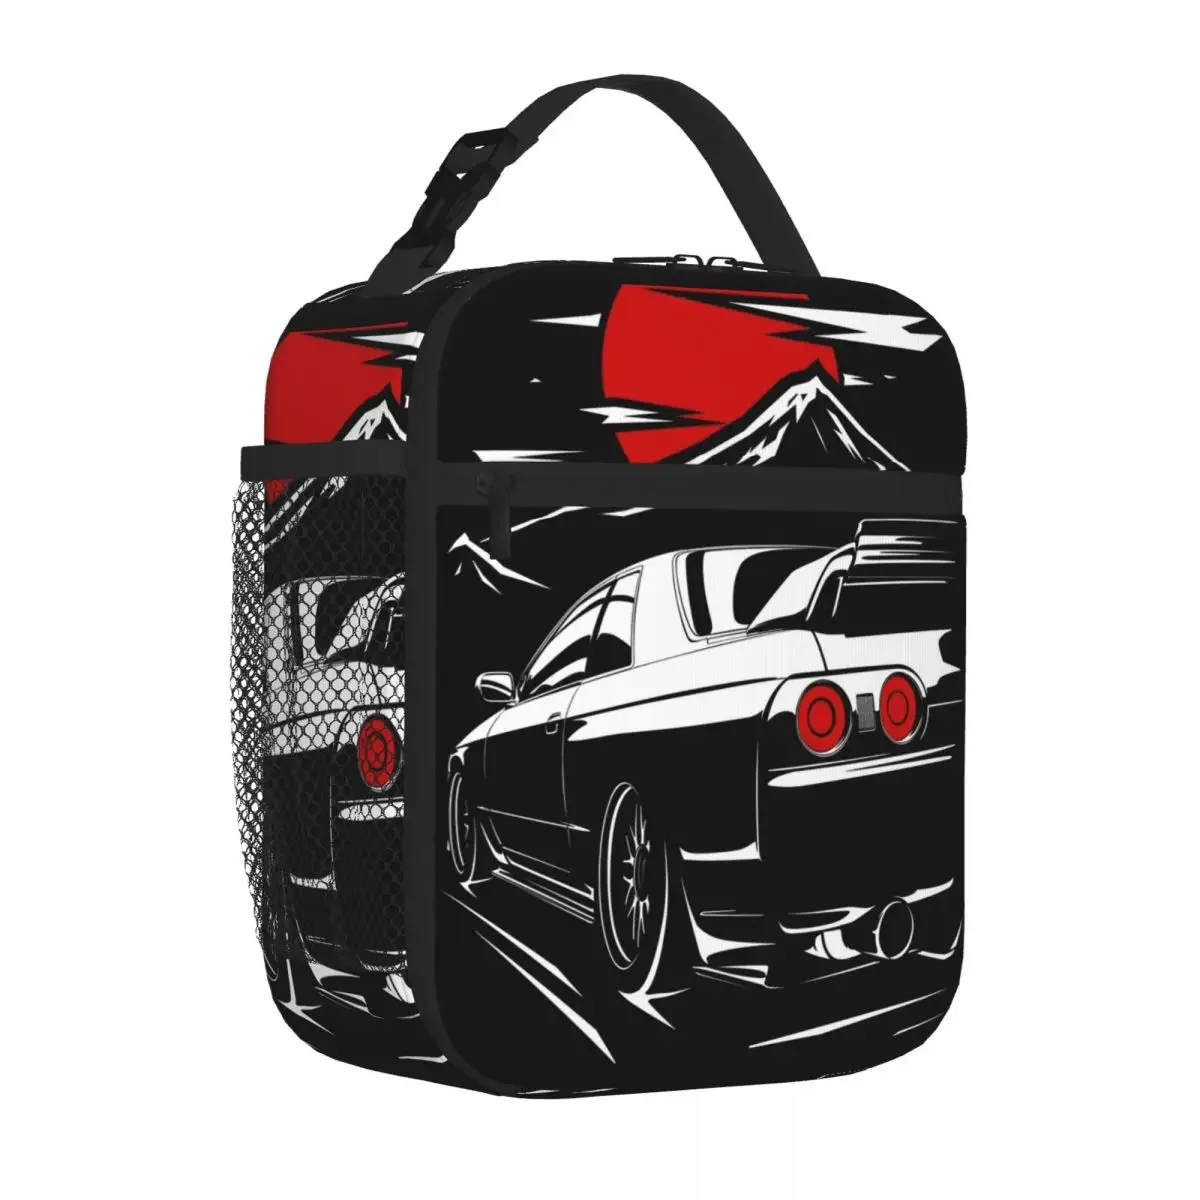 Nissan Skyline GTR 32 Haruna, изолированные сумки для ланча, Портативные сумки для пикника, термоохладитель, Ланч-бокс, Сумка для ланча для женщин, детей, школы Изображение 1